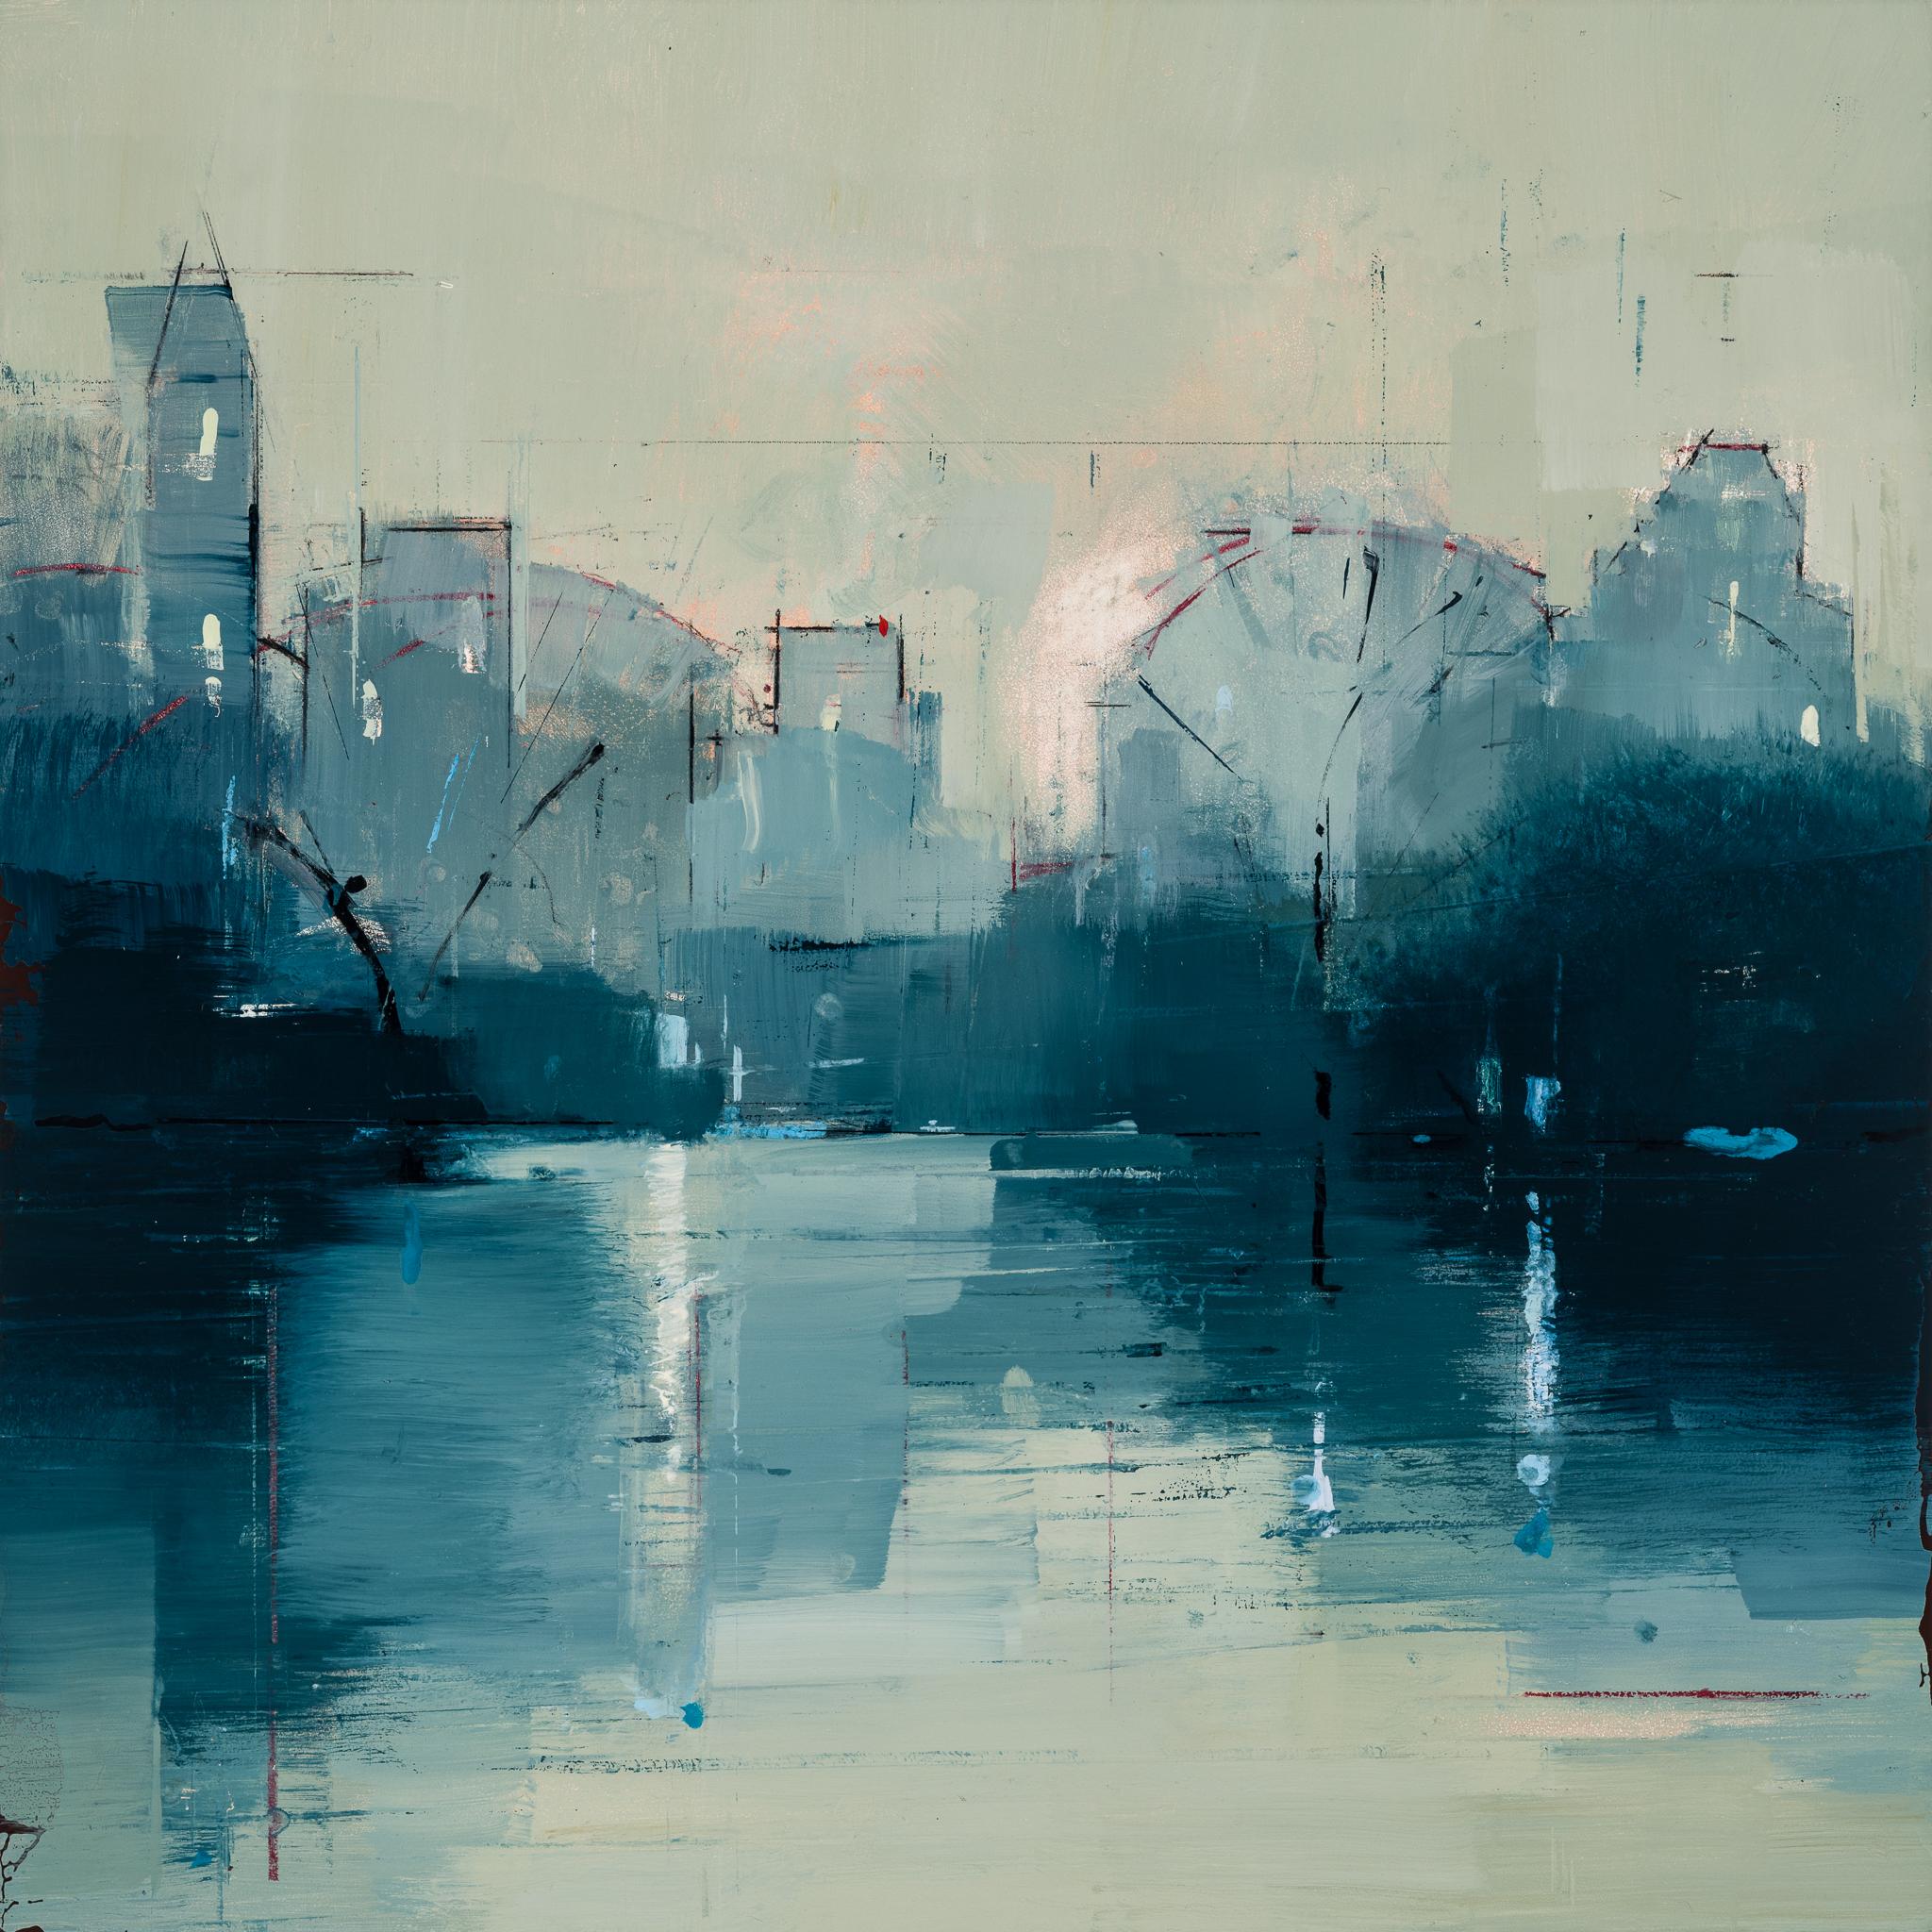 Lisa Breslow "Nocturne 2" - Landscape Oil Painting on Panel